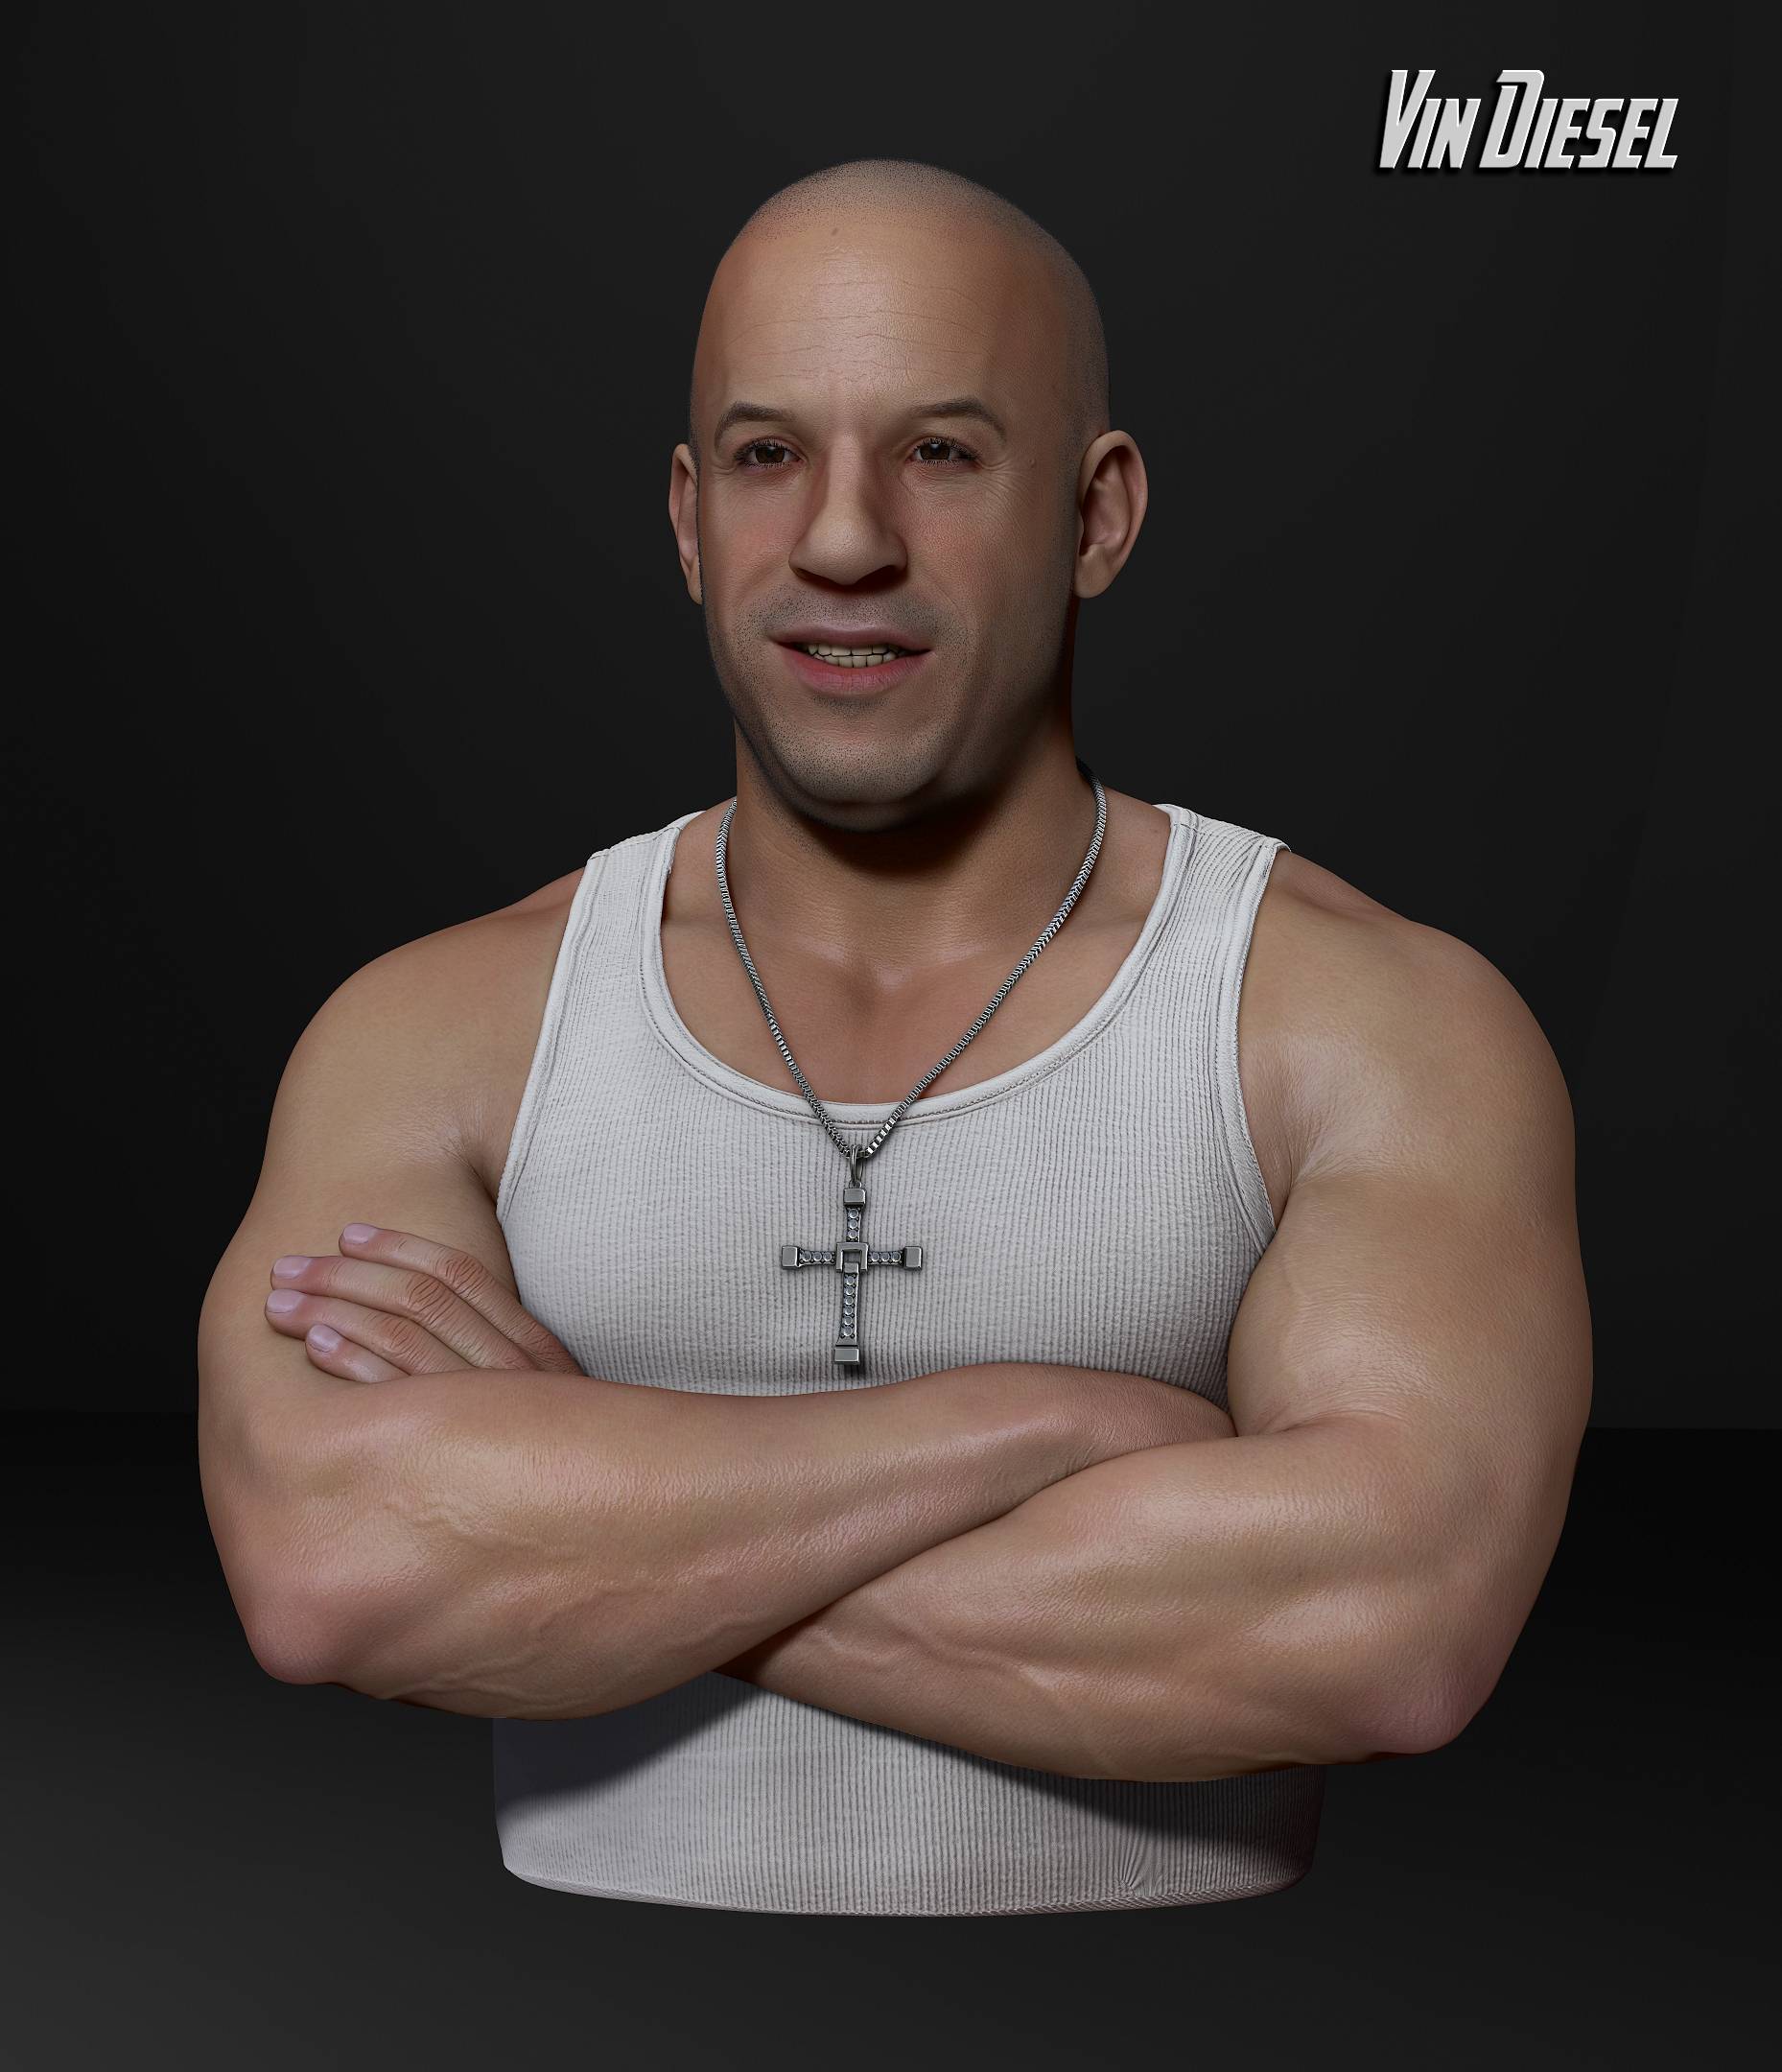 3D Model – Vin Diesel